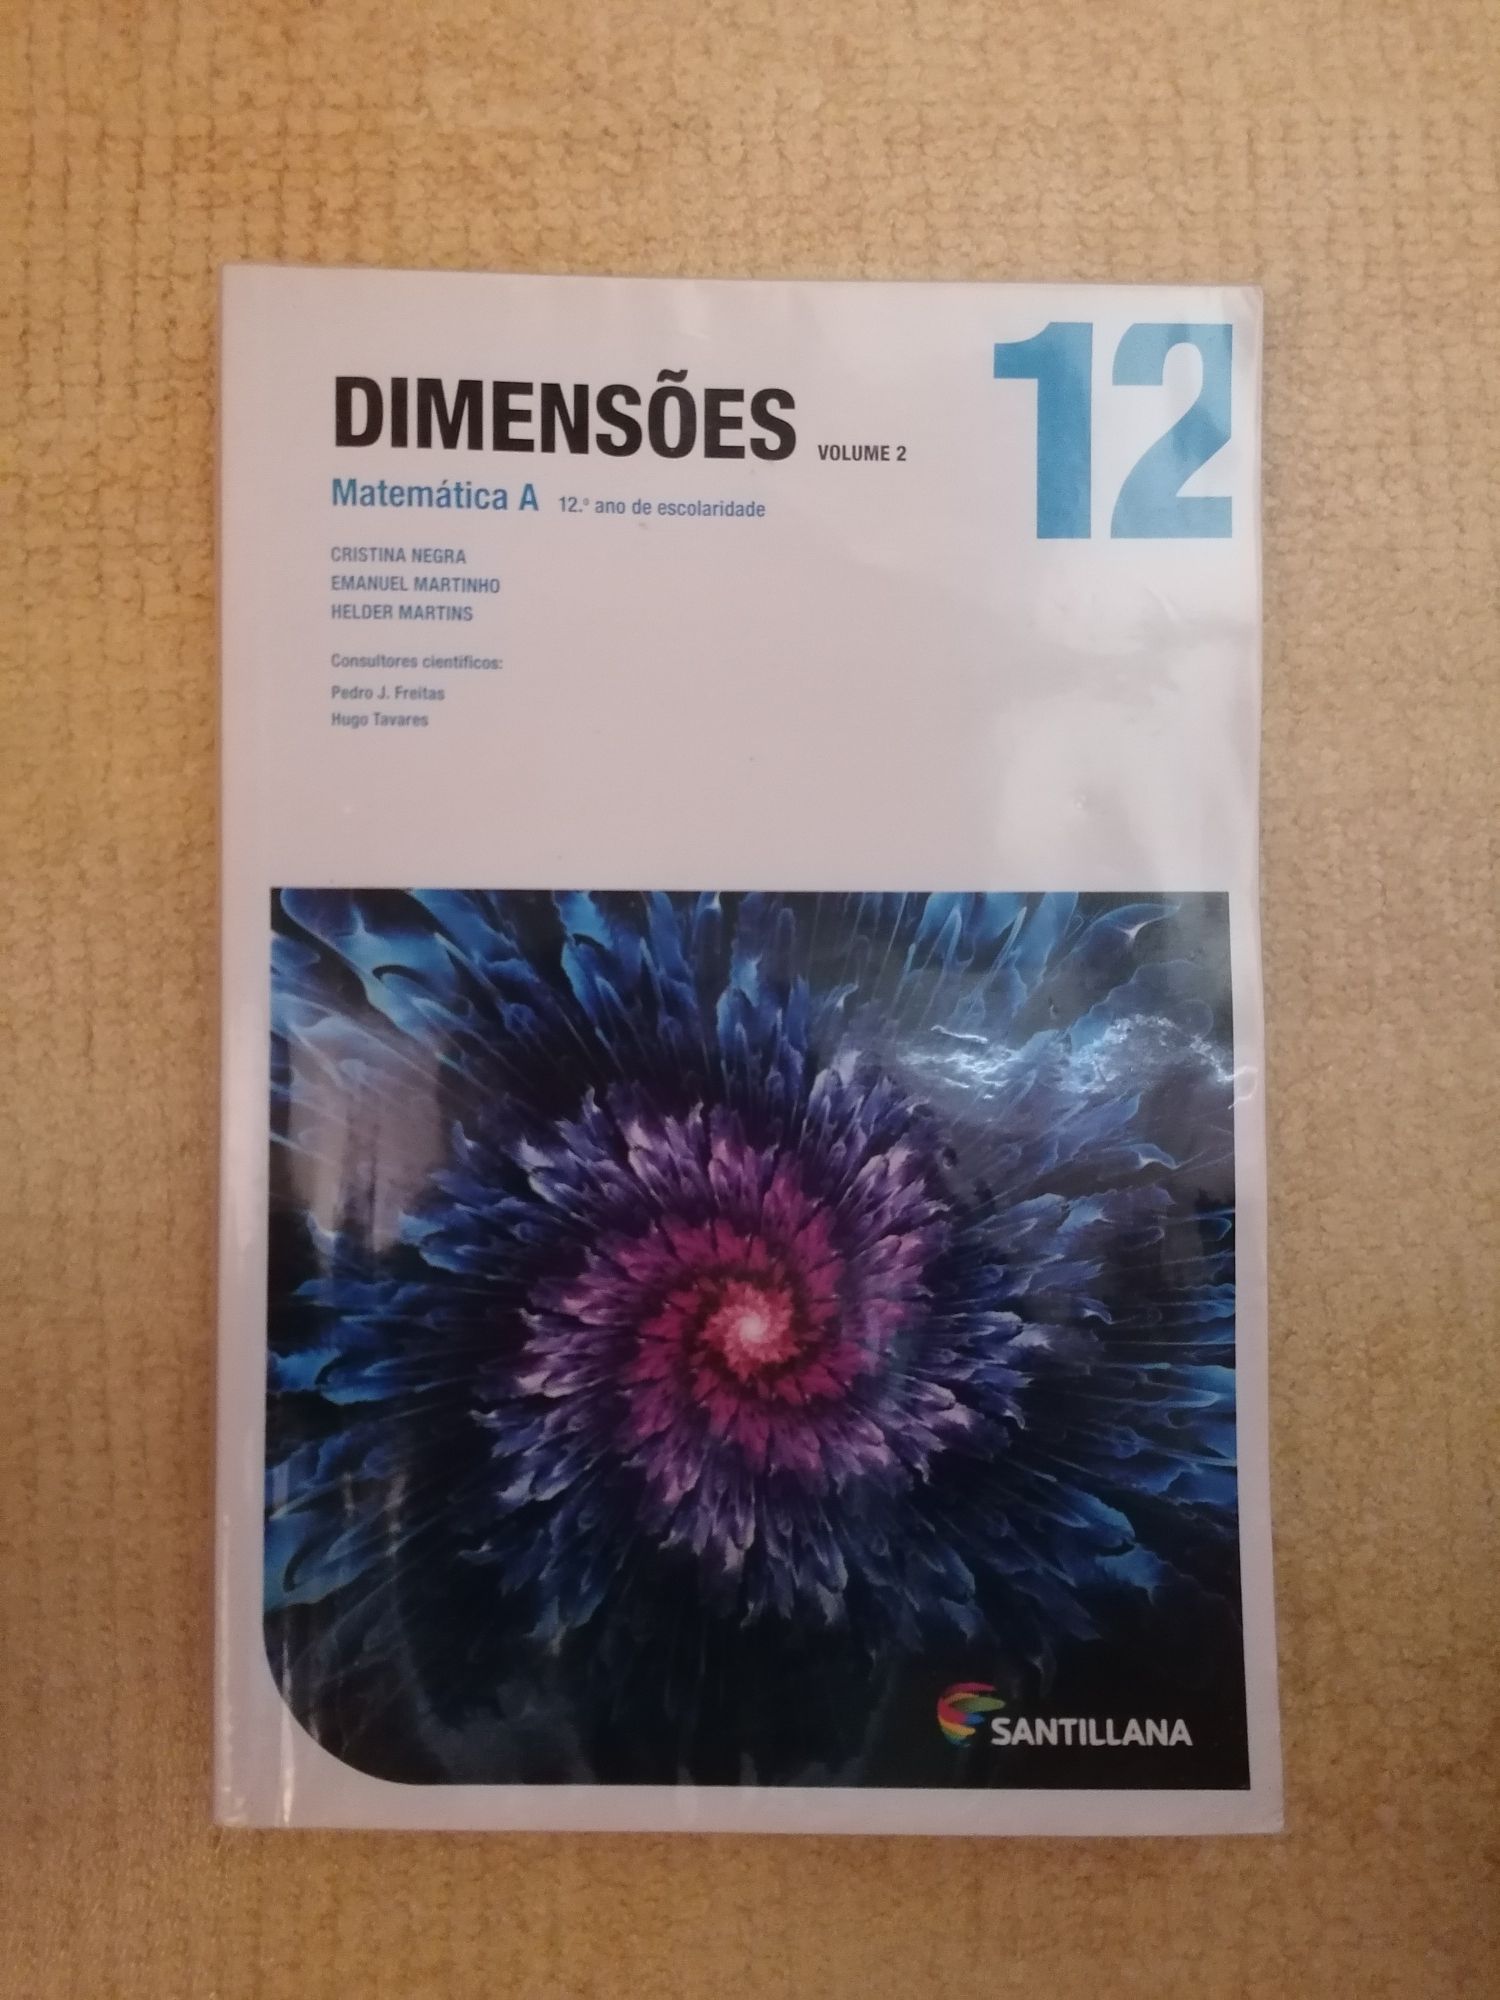 Conjunto de livros: Dimensões, Matemática A